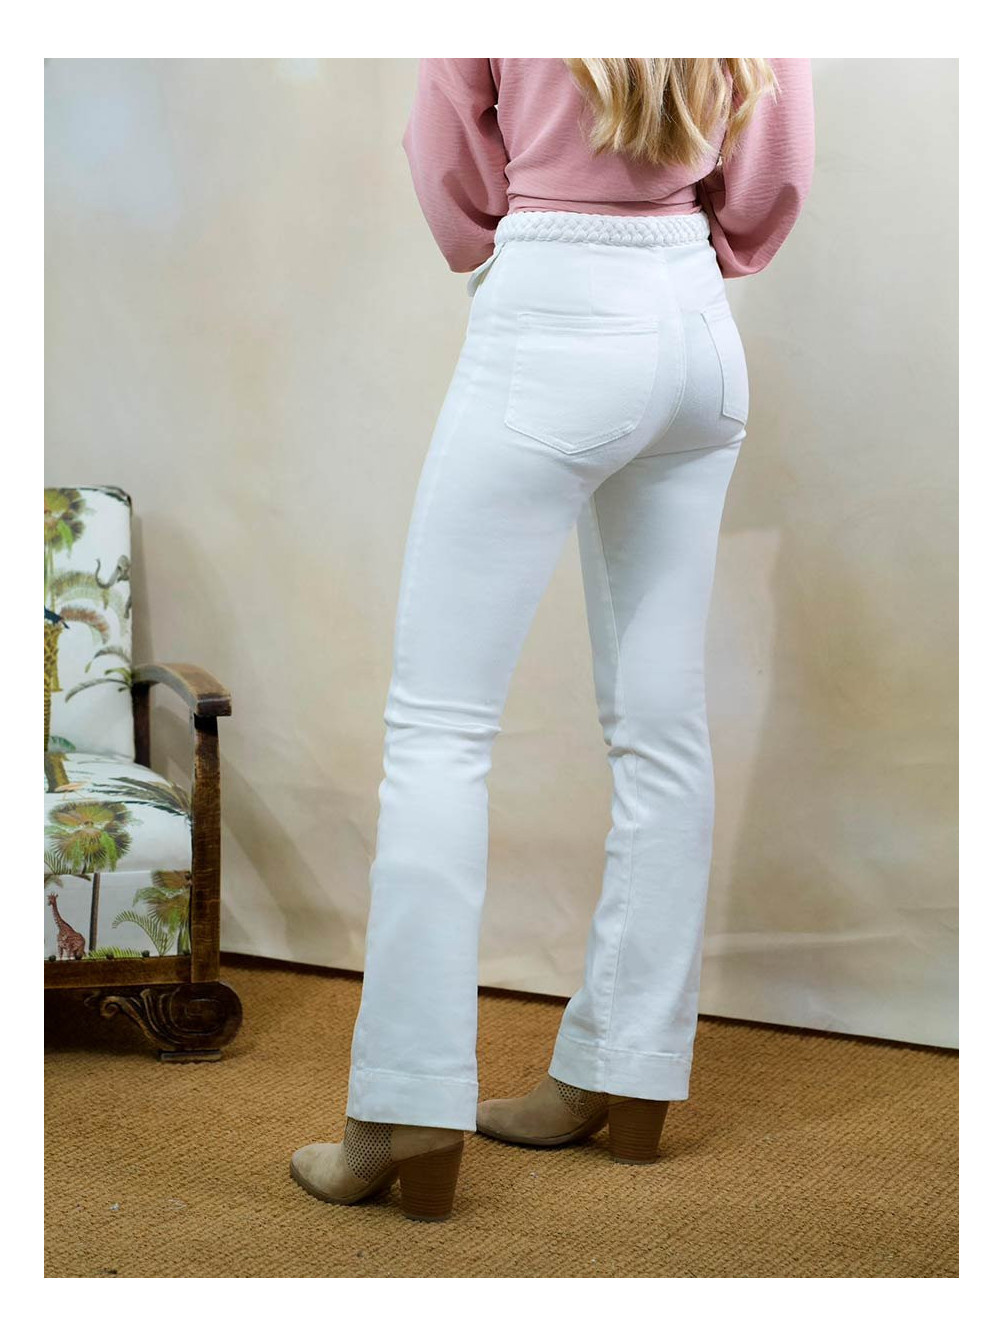 Geometría objetivo presupuesto Jeans Cinturilla Trenzada | Jeans Blanco Mujer | Mariquita Trasquilá